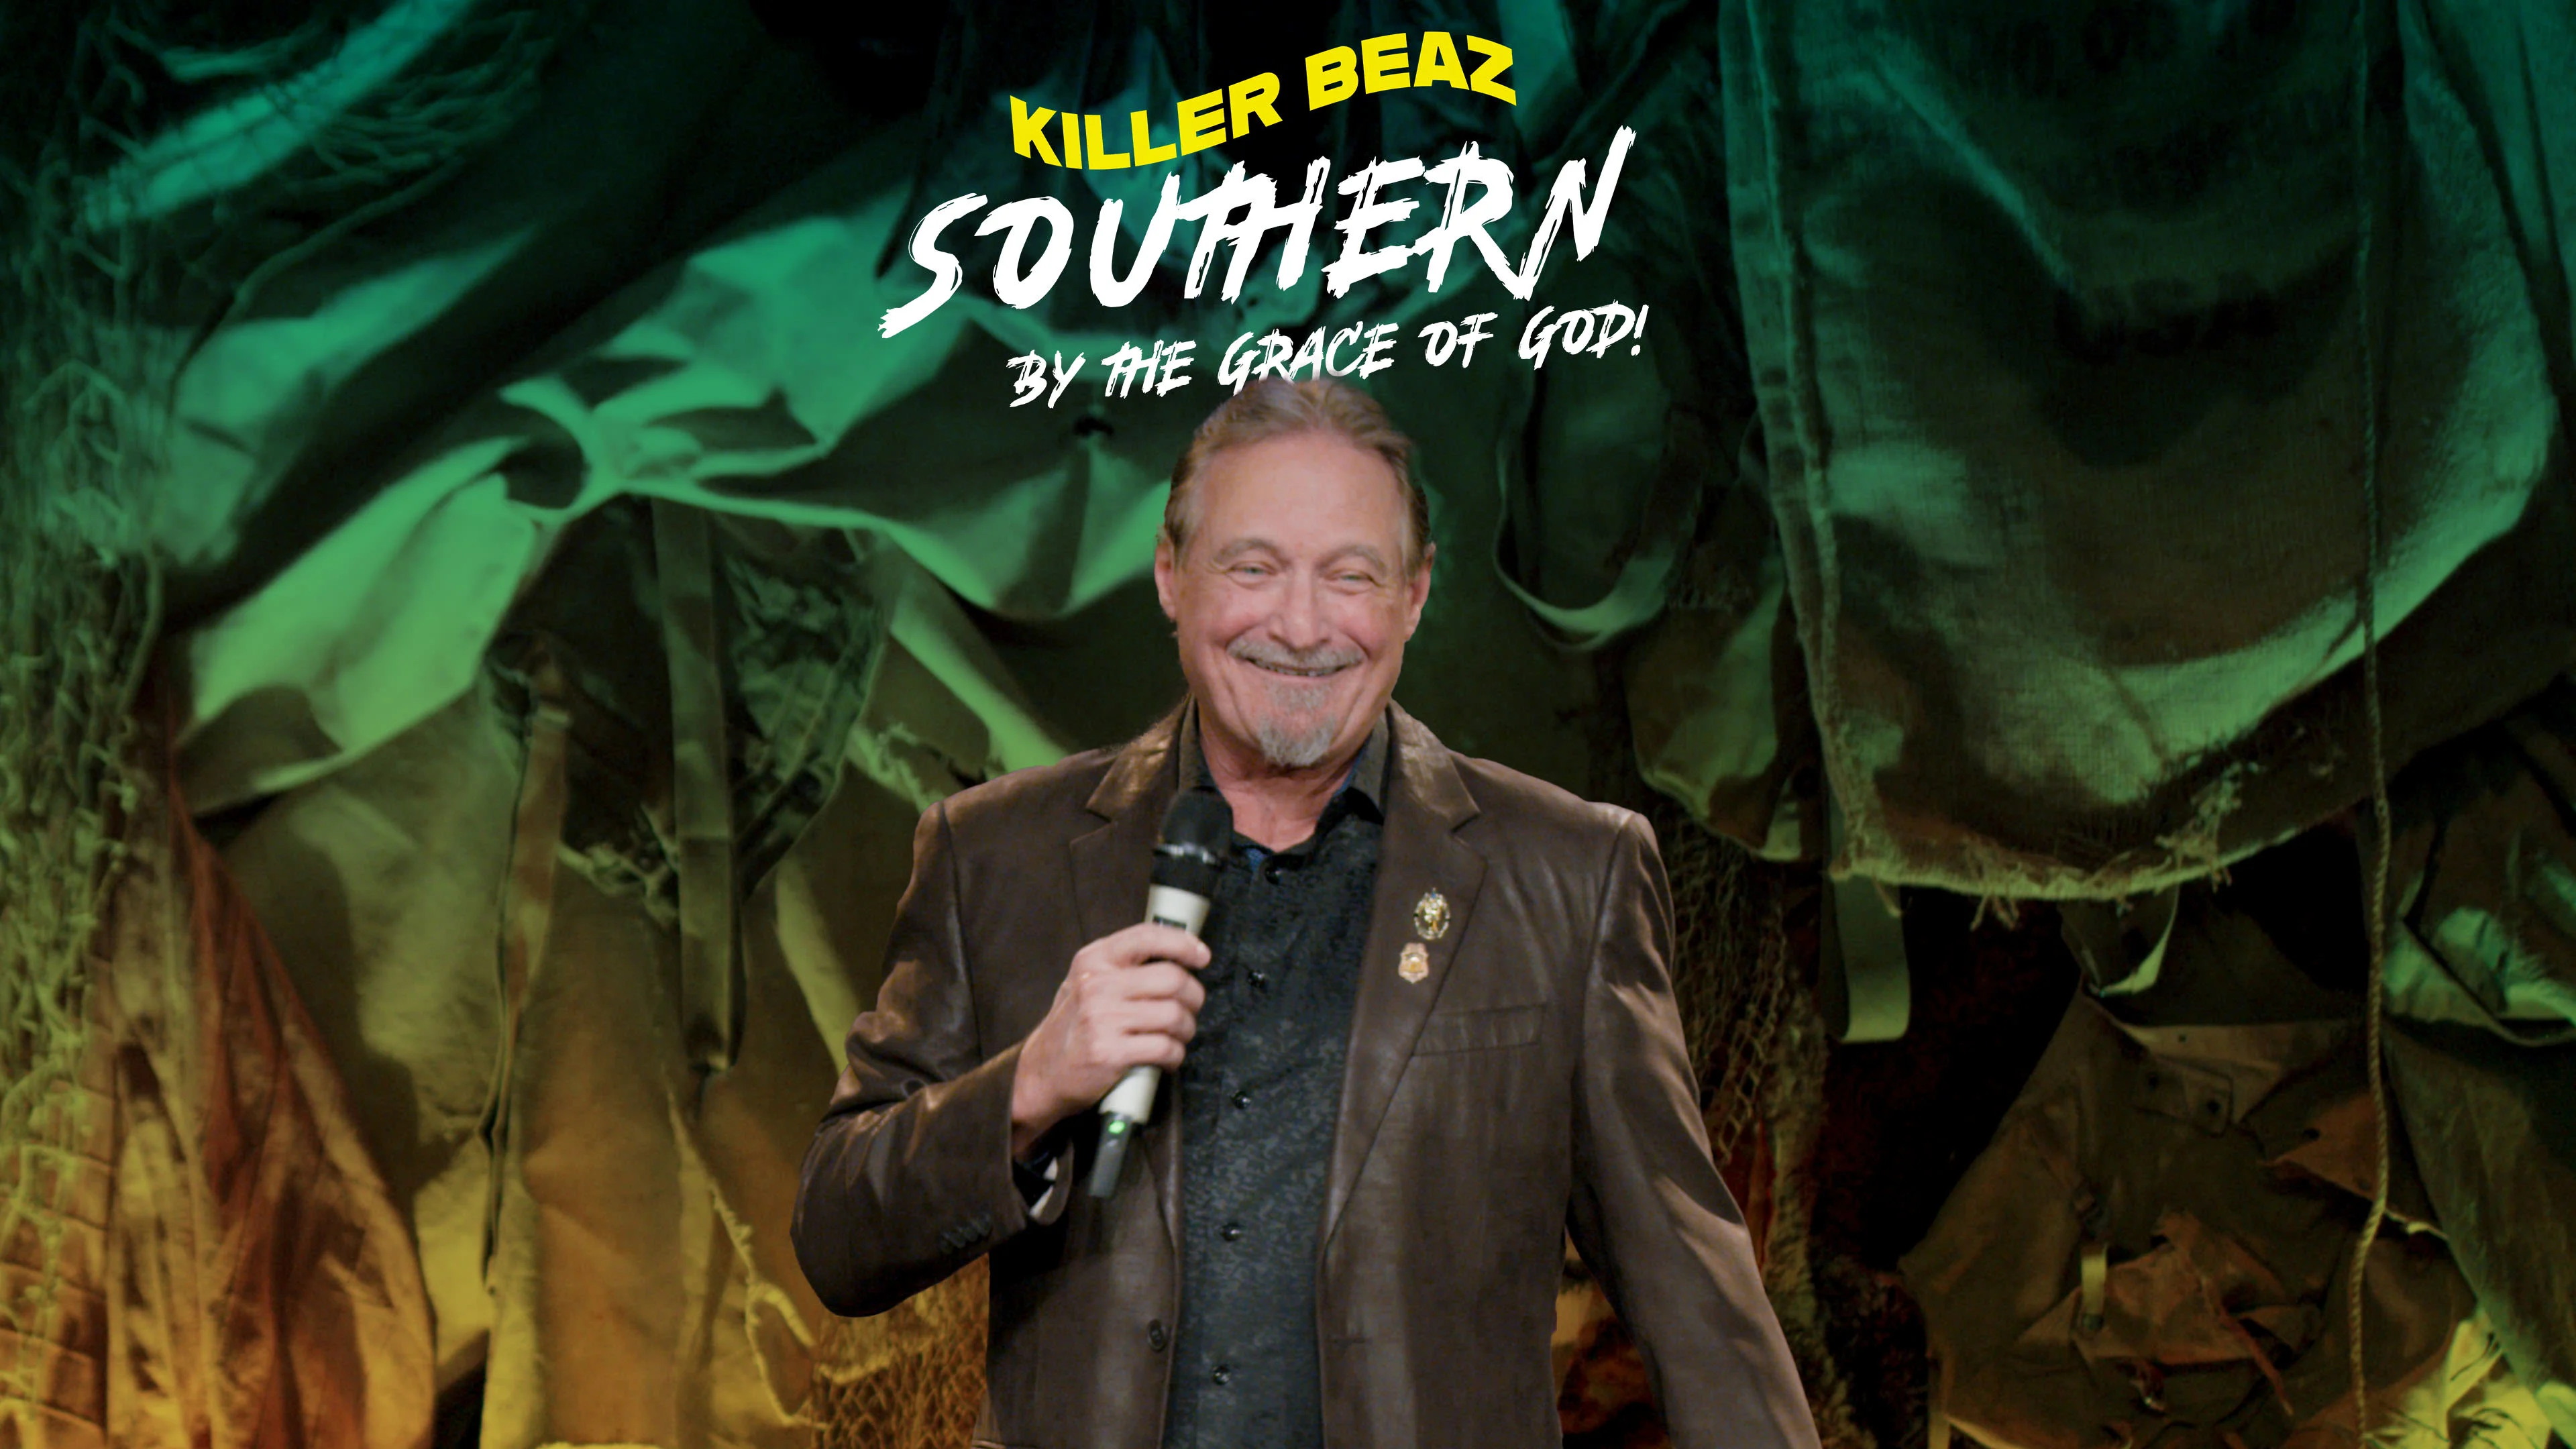 Killer Beaz - Southern by the Grace of God